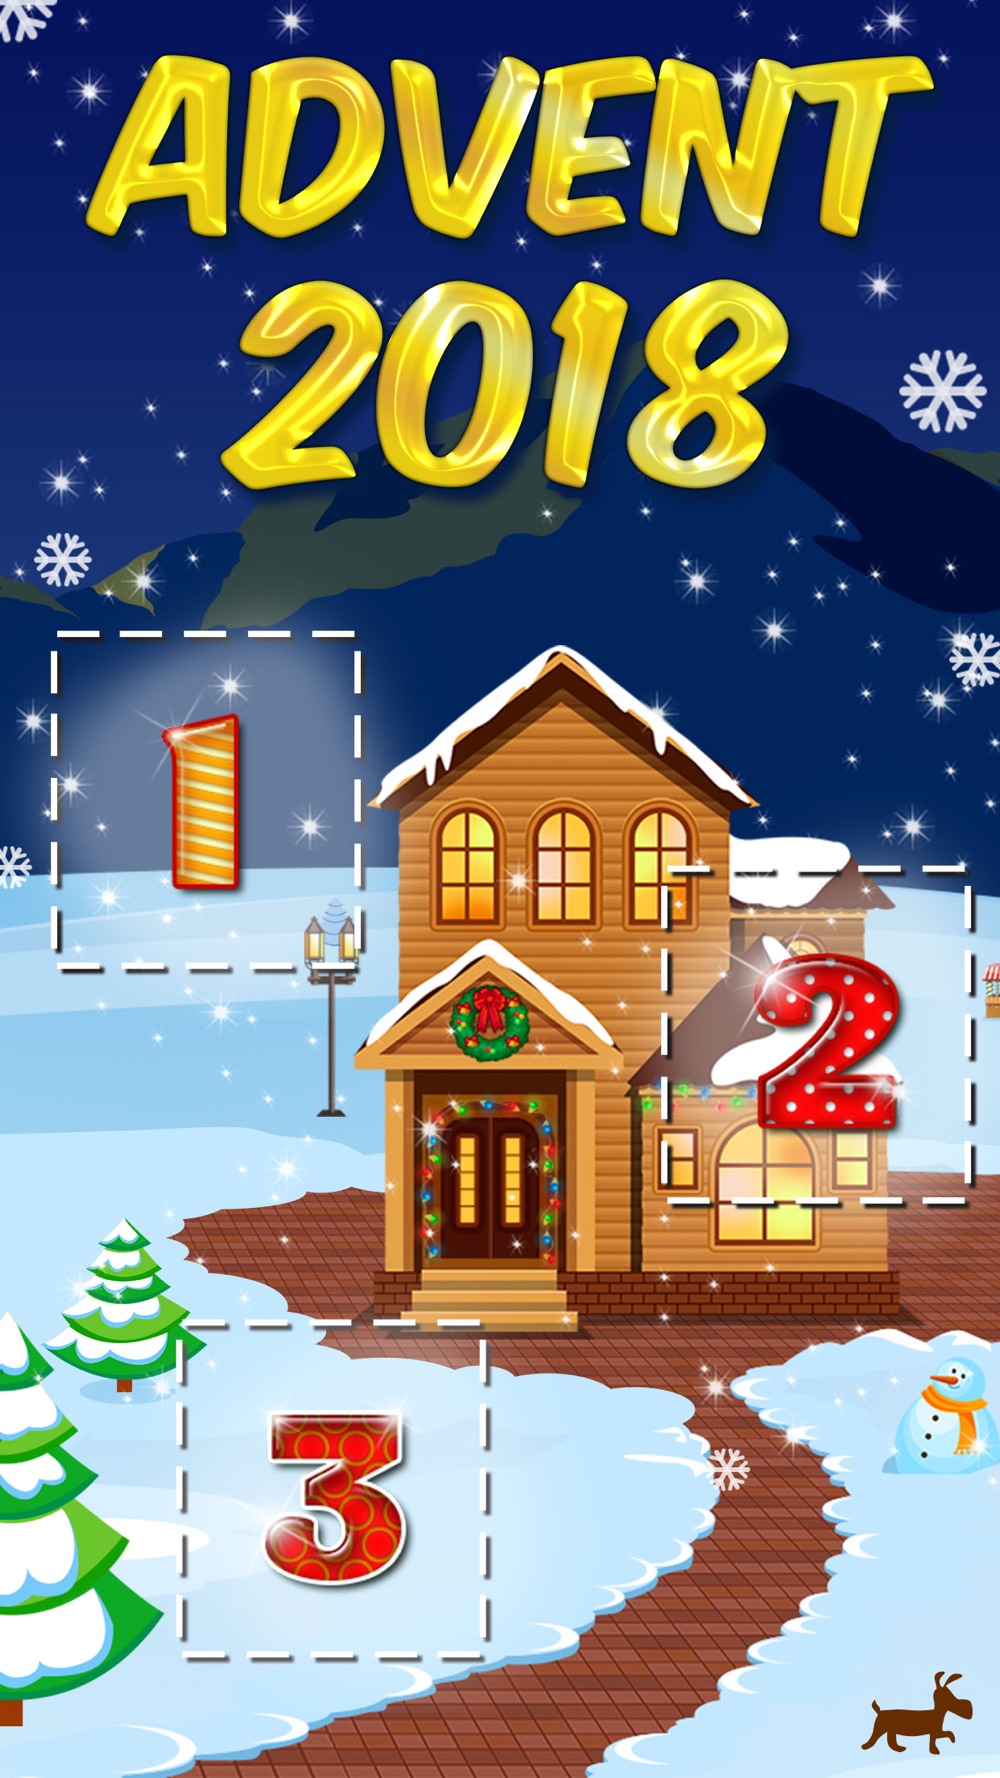 25 Days of Christmas 2018